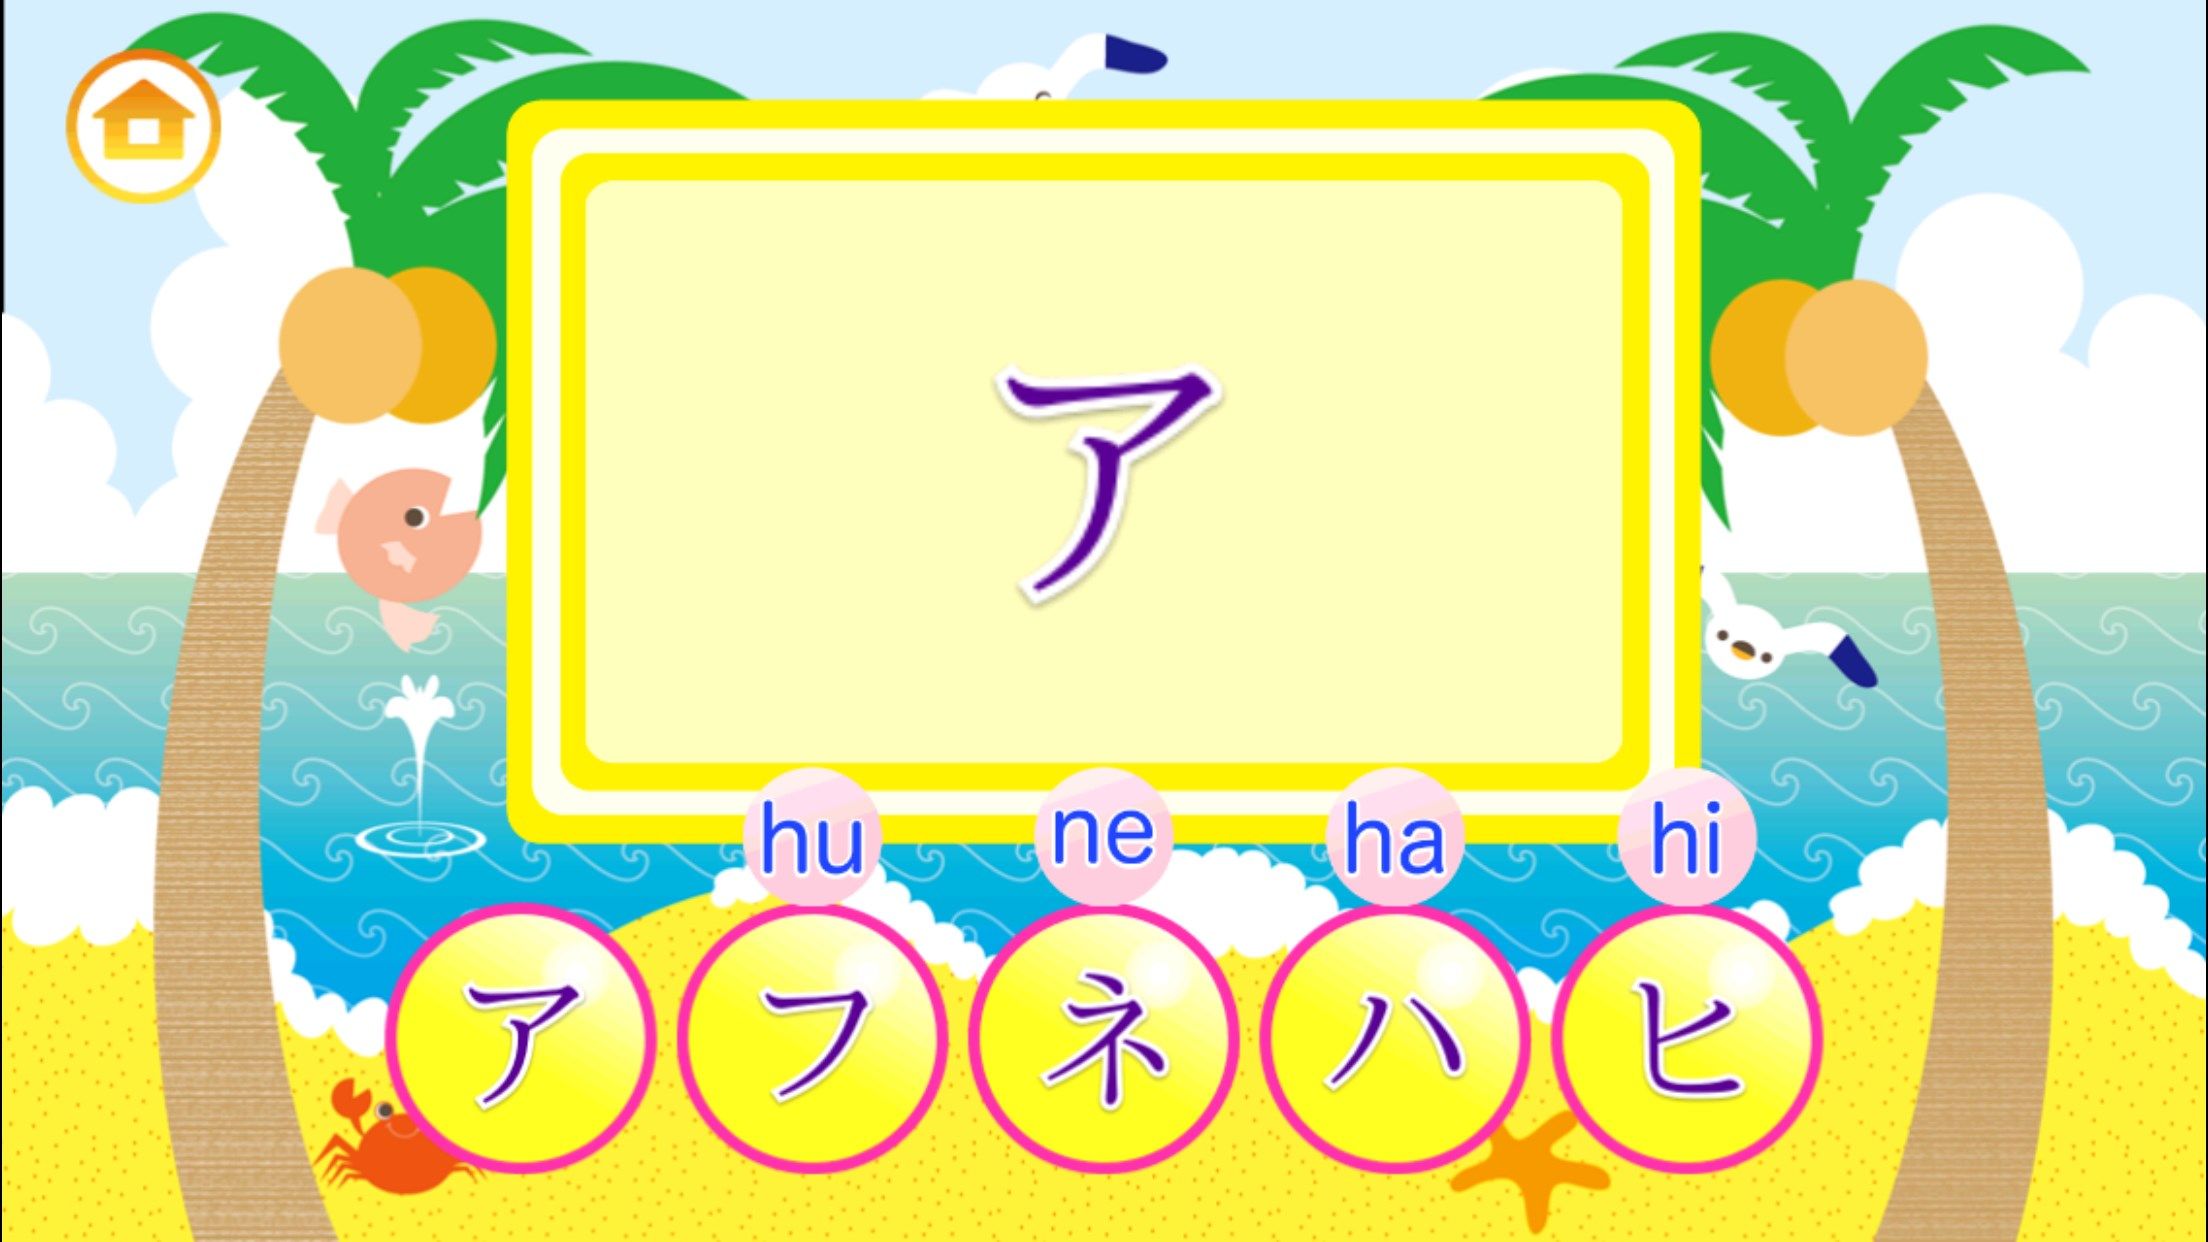 Learn Japanese Katakana!